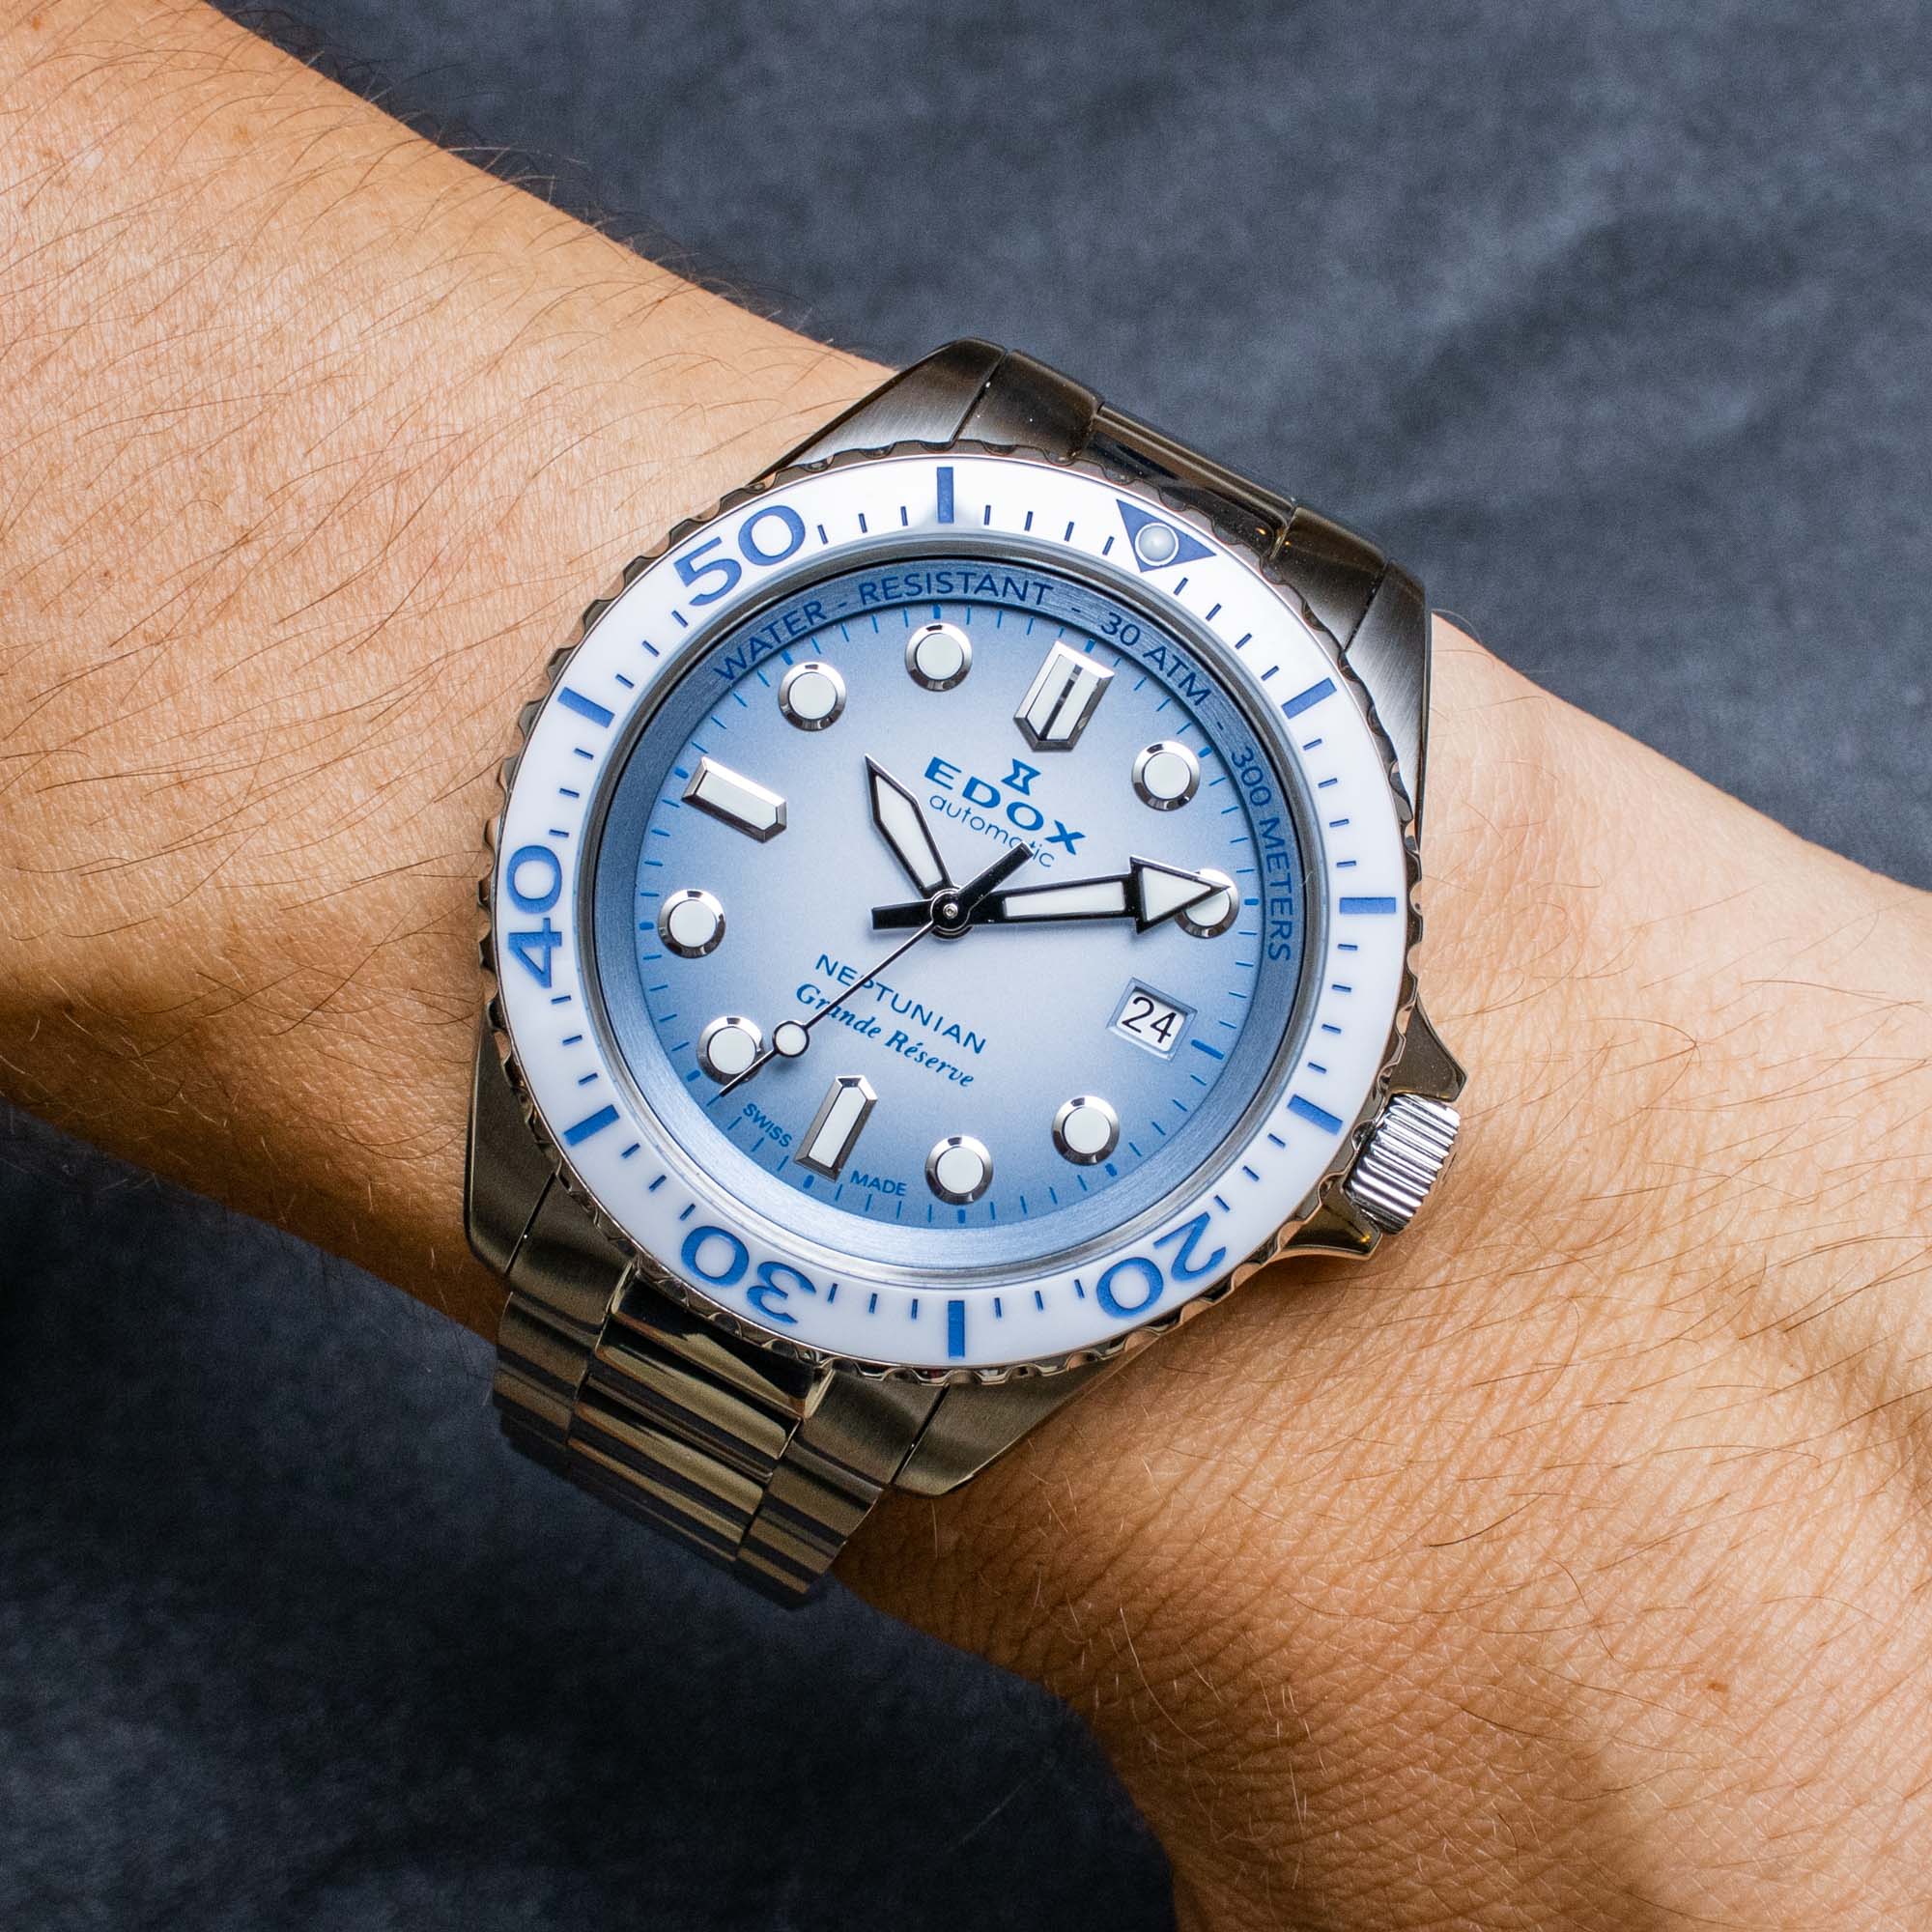 Дайверские часы Edox Neptunian Grande Réserve сочетают в себе функциональность и изысканность